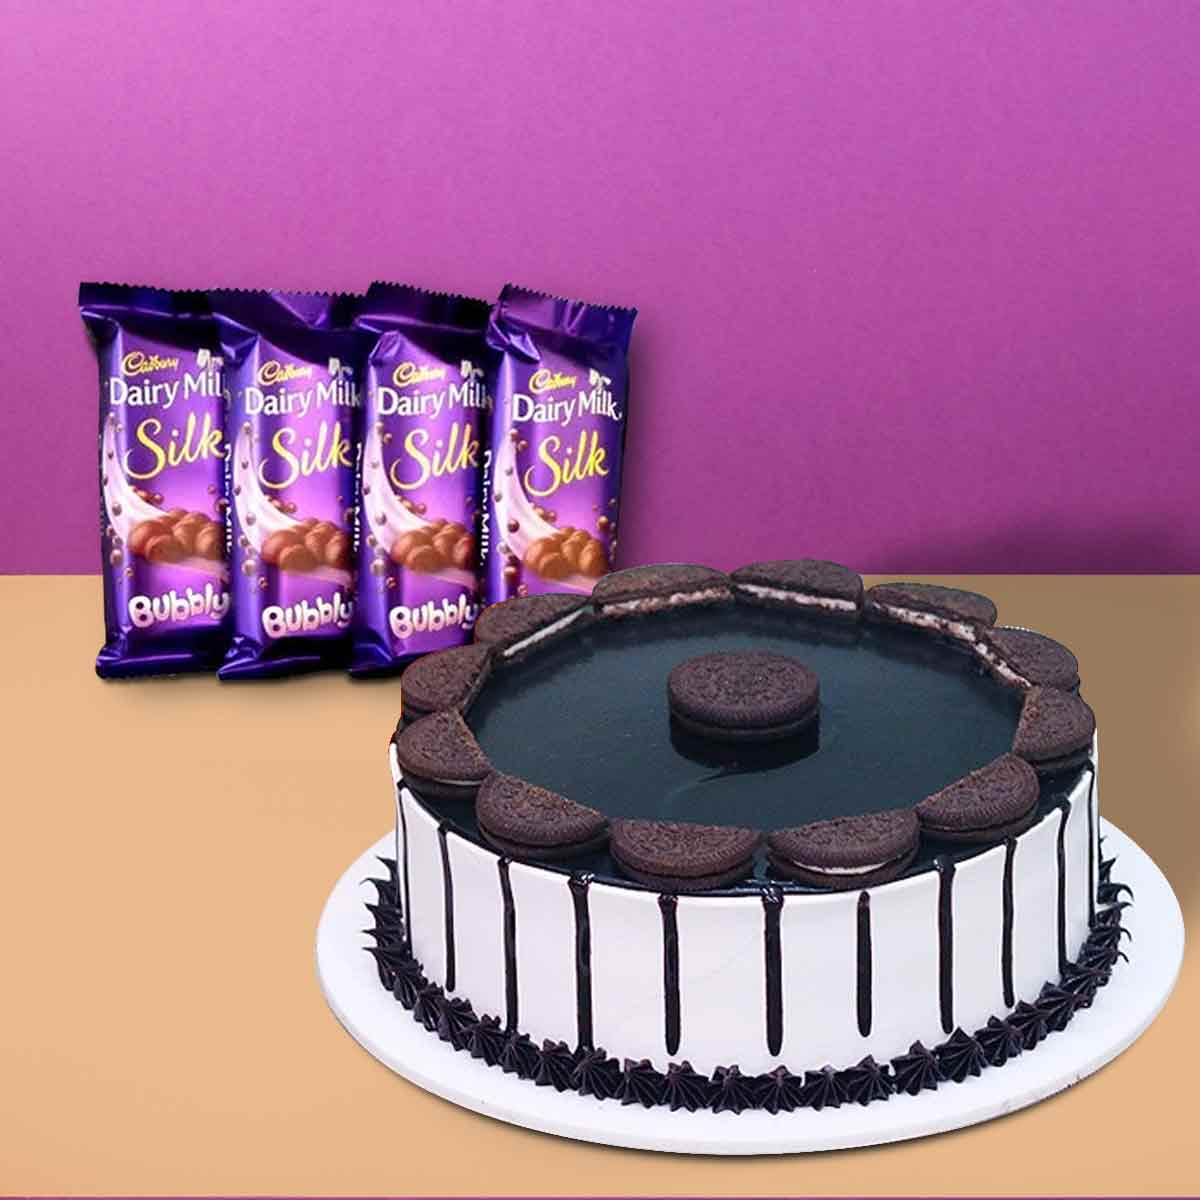 Oreo Cake With Cadbury Chocolate 